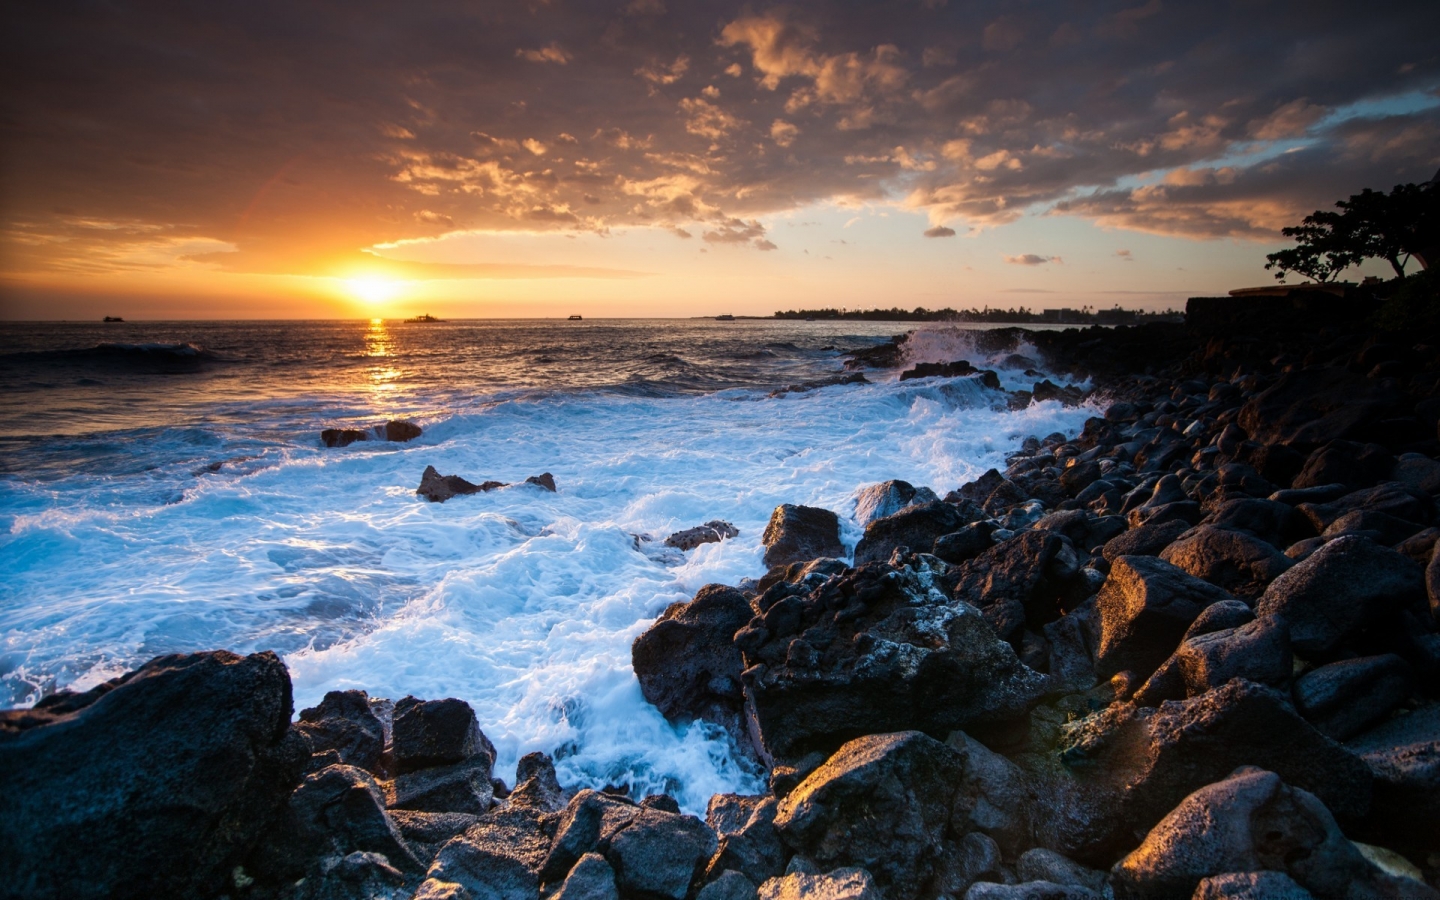 Hawaii Sunset for 1440 x 900 widescreen resolution